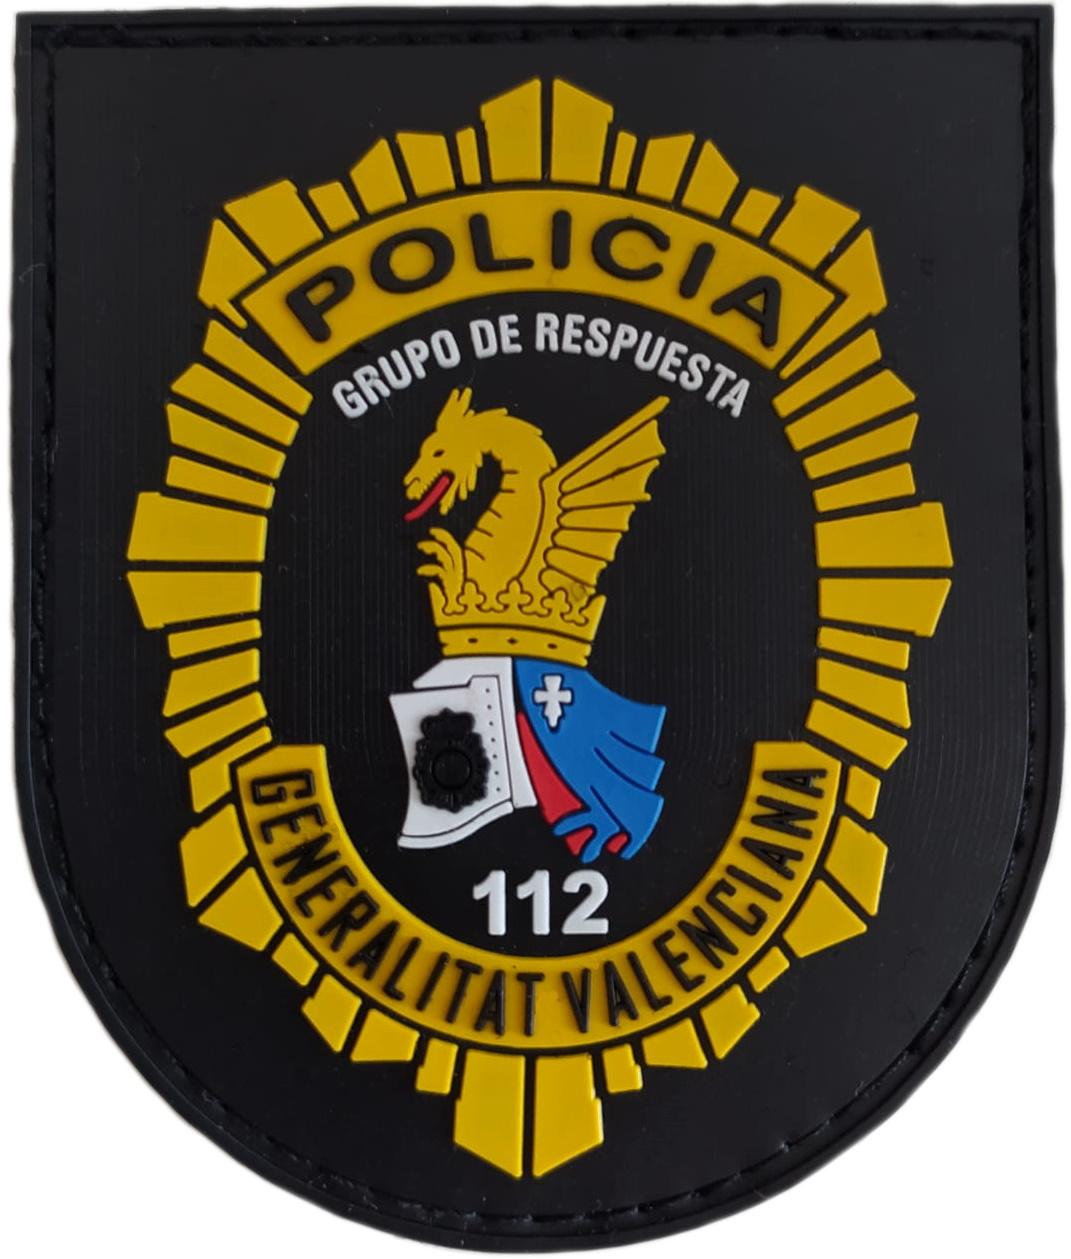 Policía nacional CNP unidad adscrita a la Generalitat valenciana grupo de respuesta parche insignia emblema distintivo